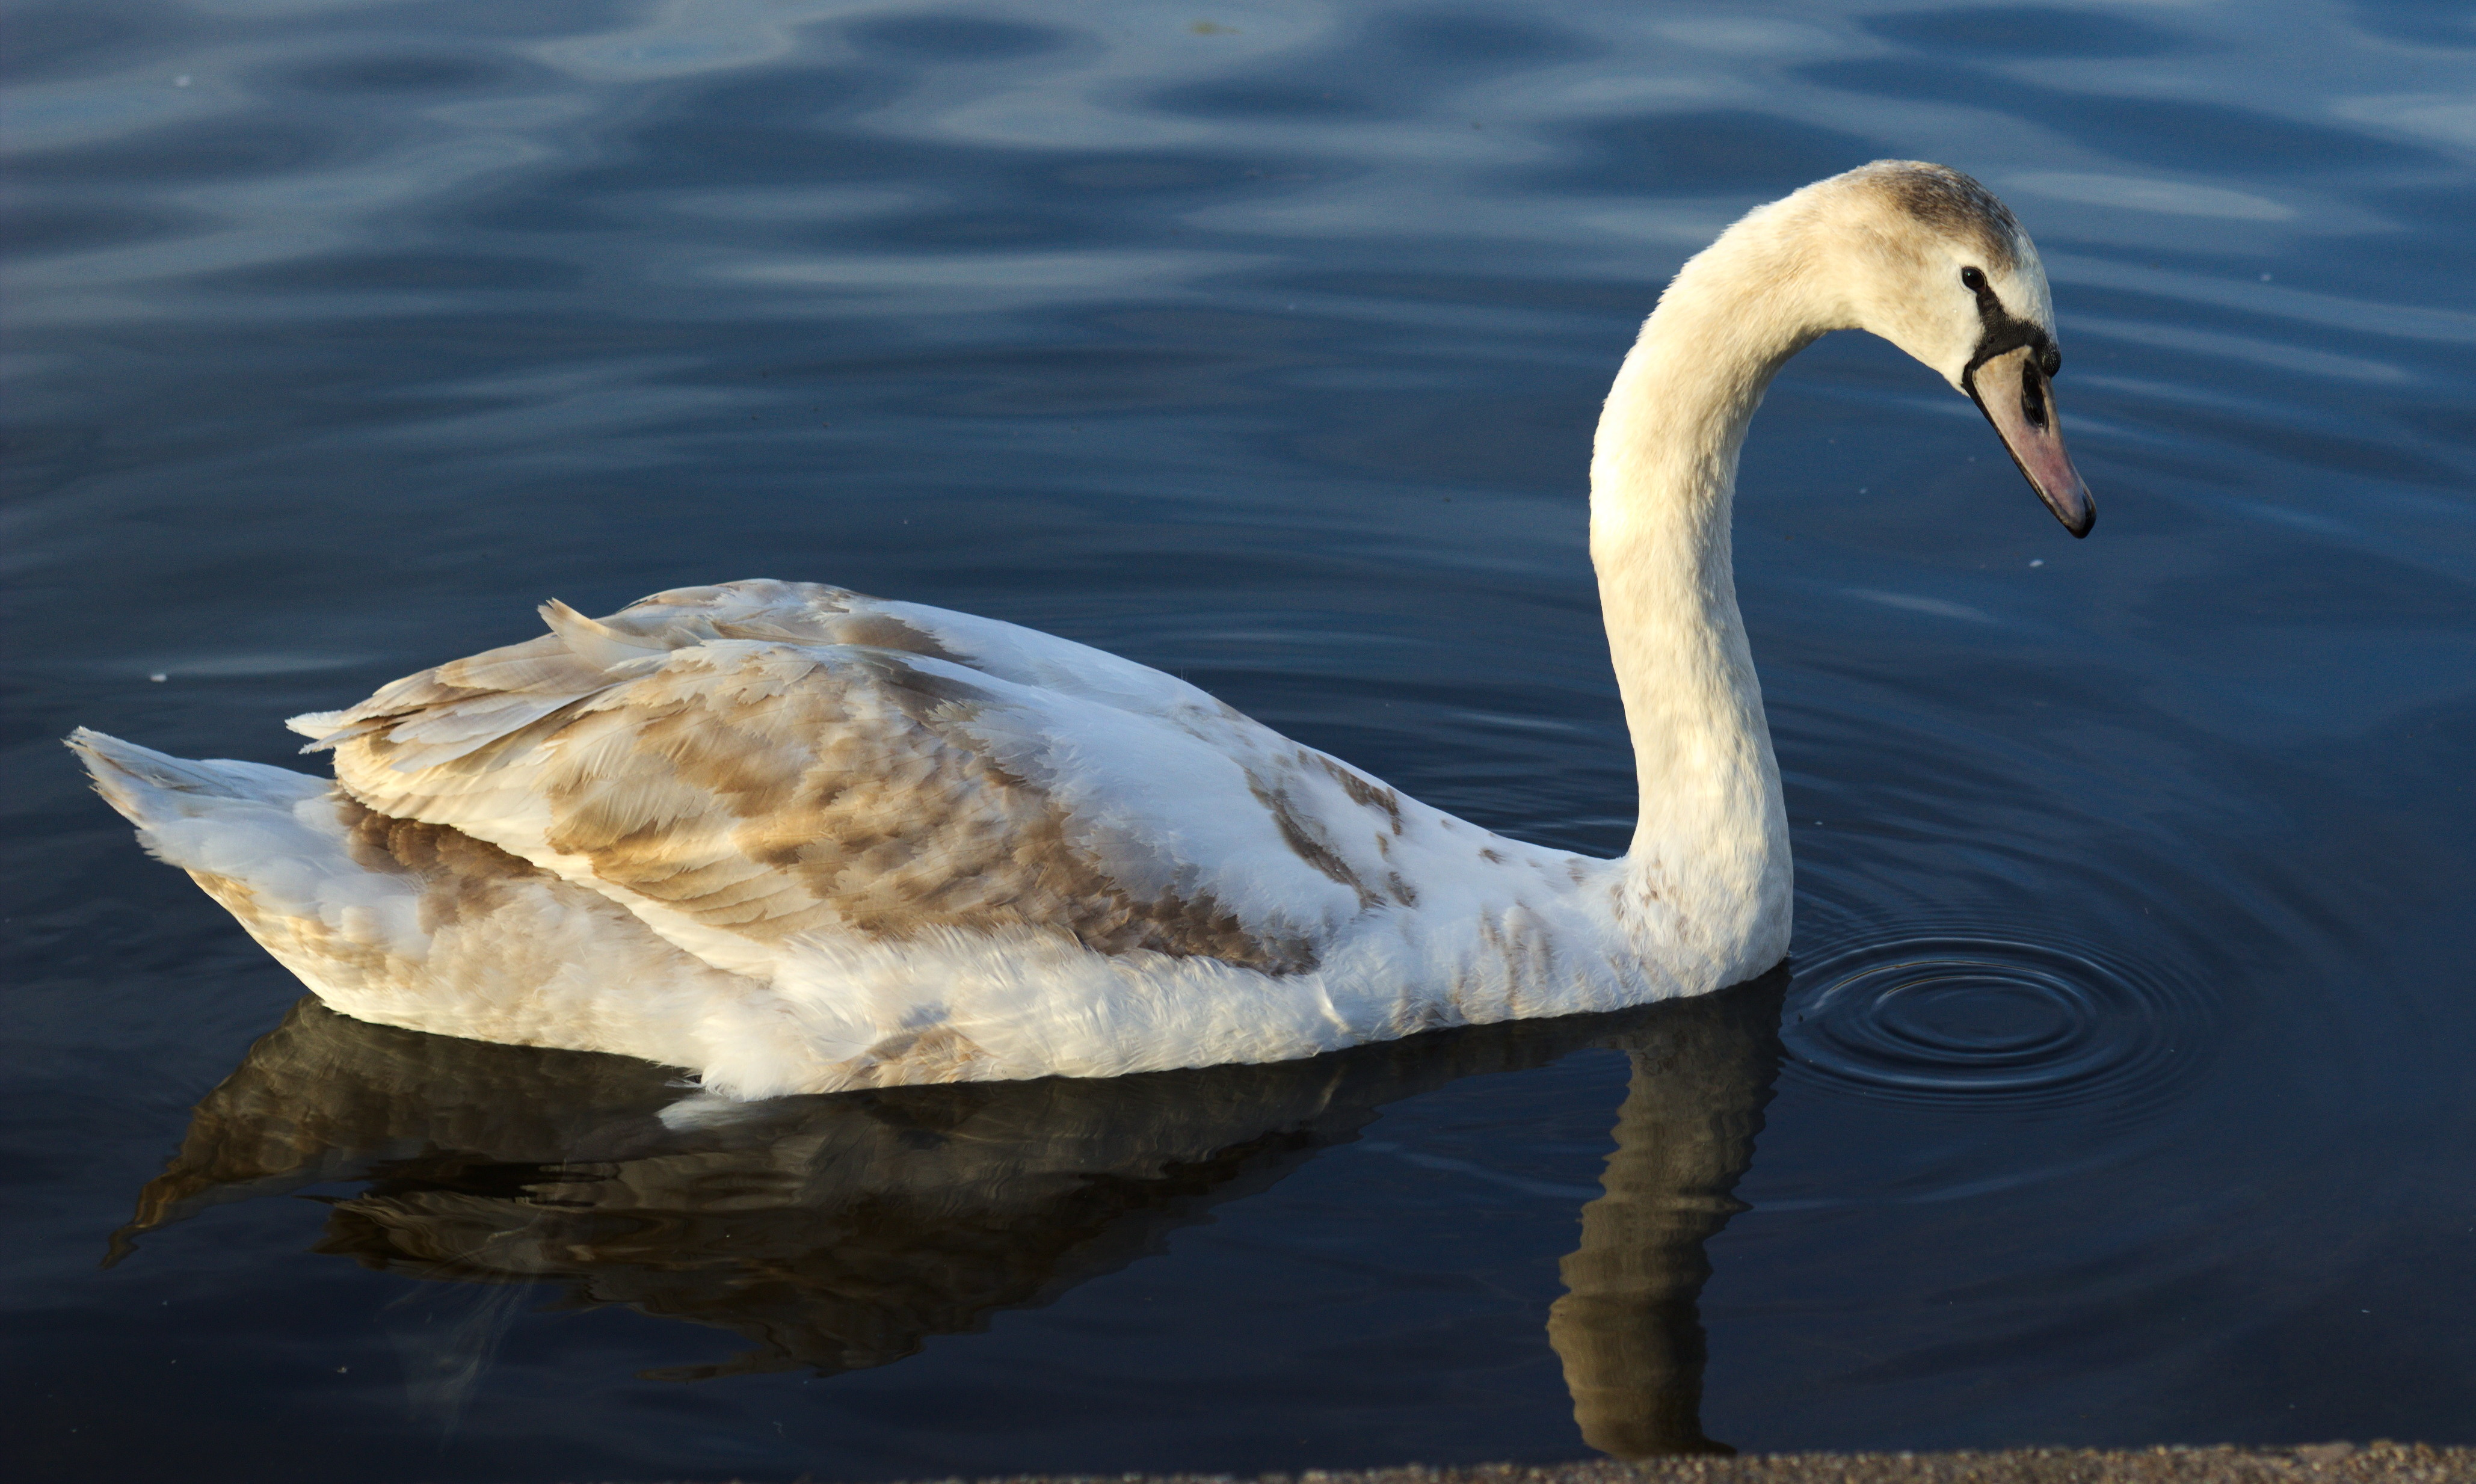 Swan reflected in water, paul-lincke ufer photo